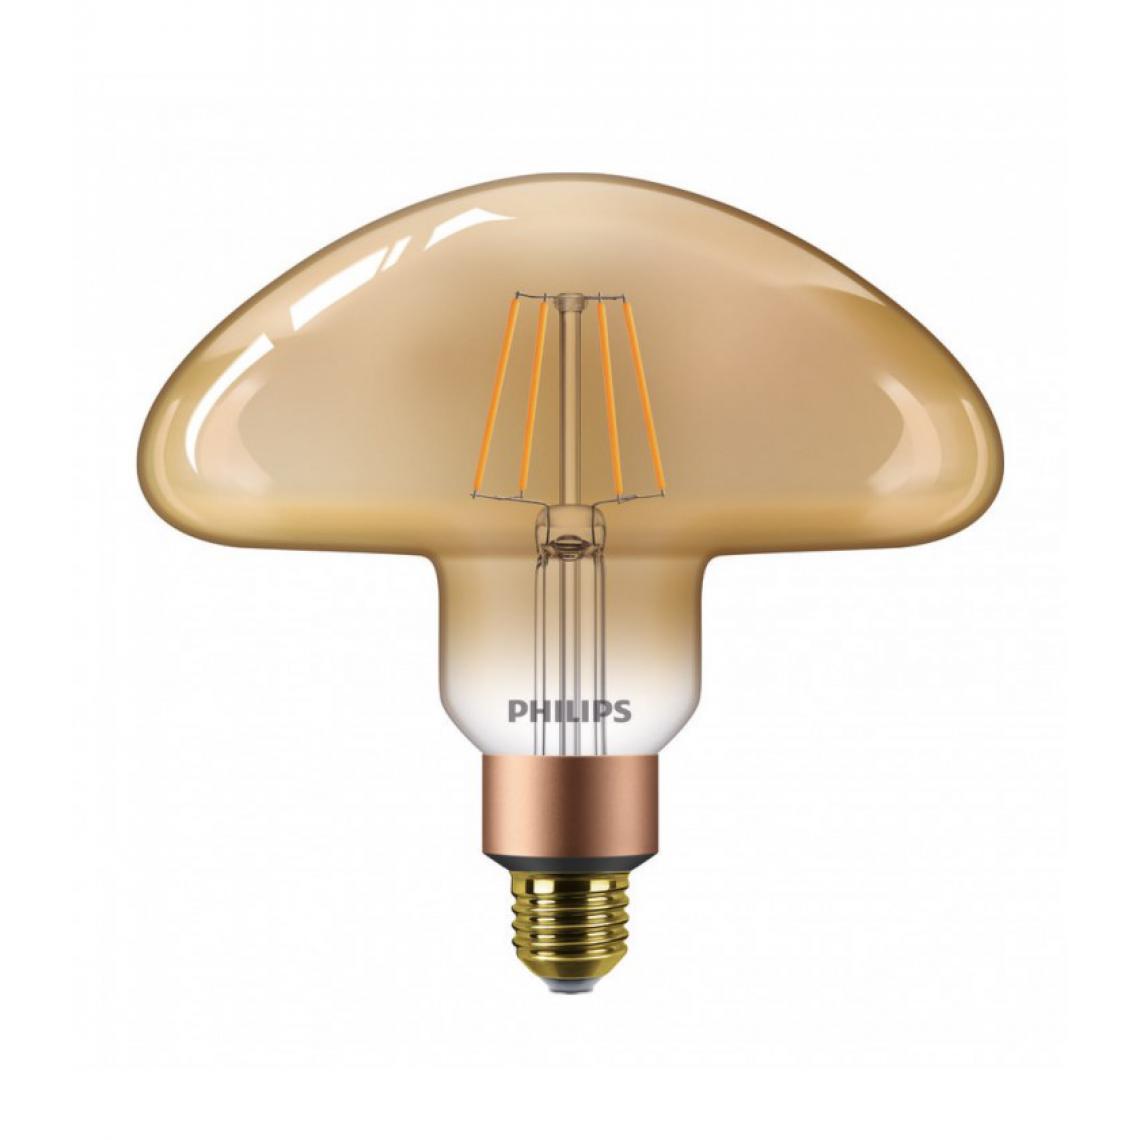 Delitech - Ampoule LED E27 Philips décorative en forme de champignon - LEDClassic 30W Mushroom E27 2000K GOLD D - Ampoules LED